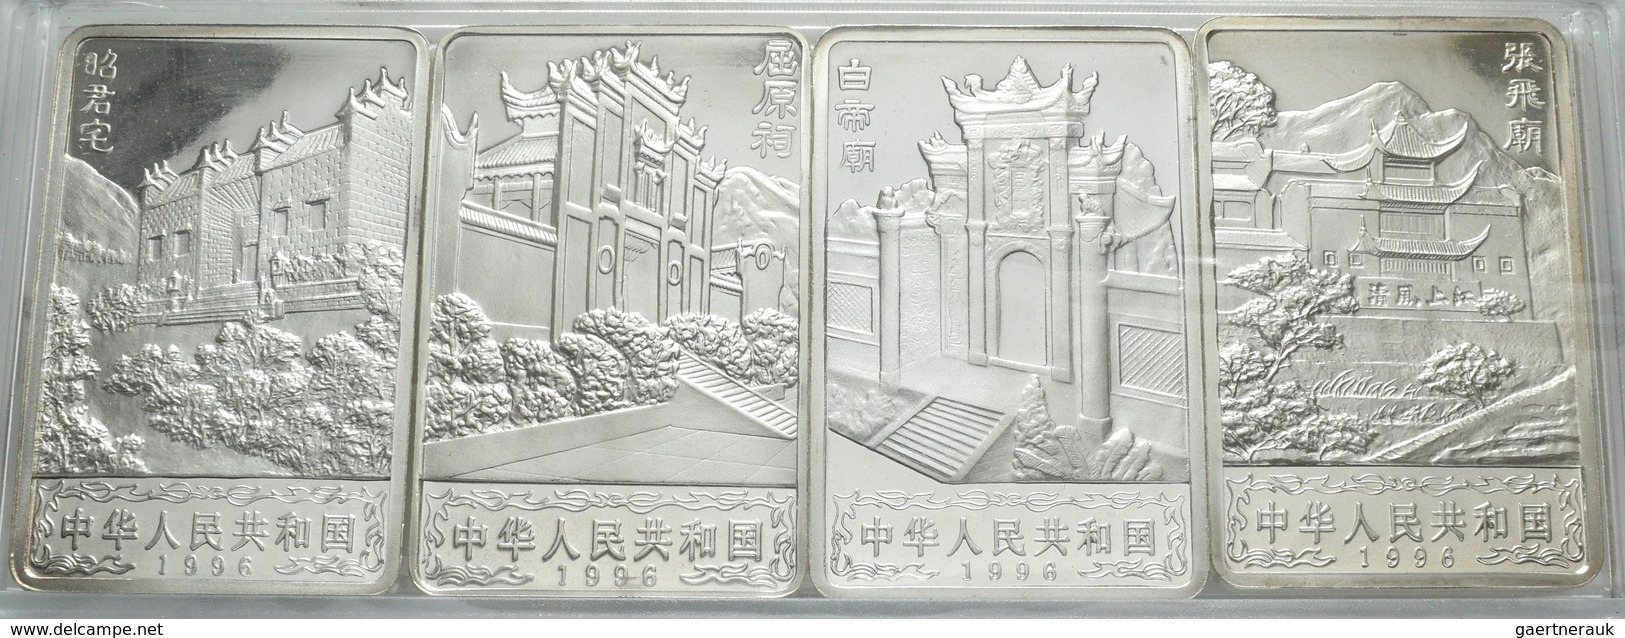 China - Volksrepublik: Münzset 1996 Bestehend Aus 4 X Rechteckingen 20 Yuan Münzen, Je 2 OZ 999/1000 - China